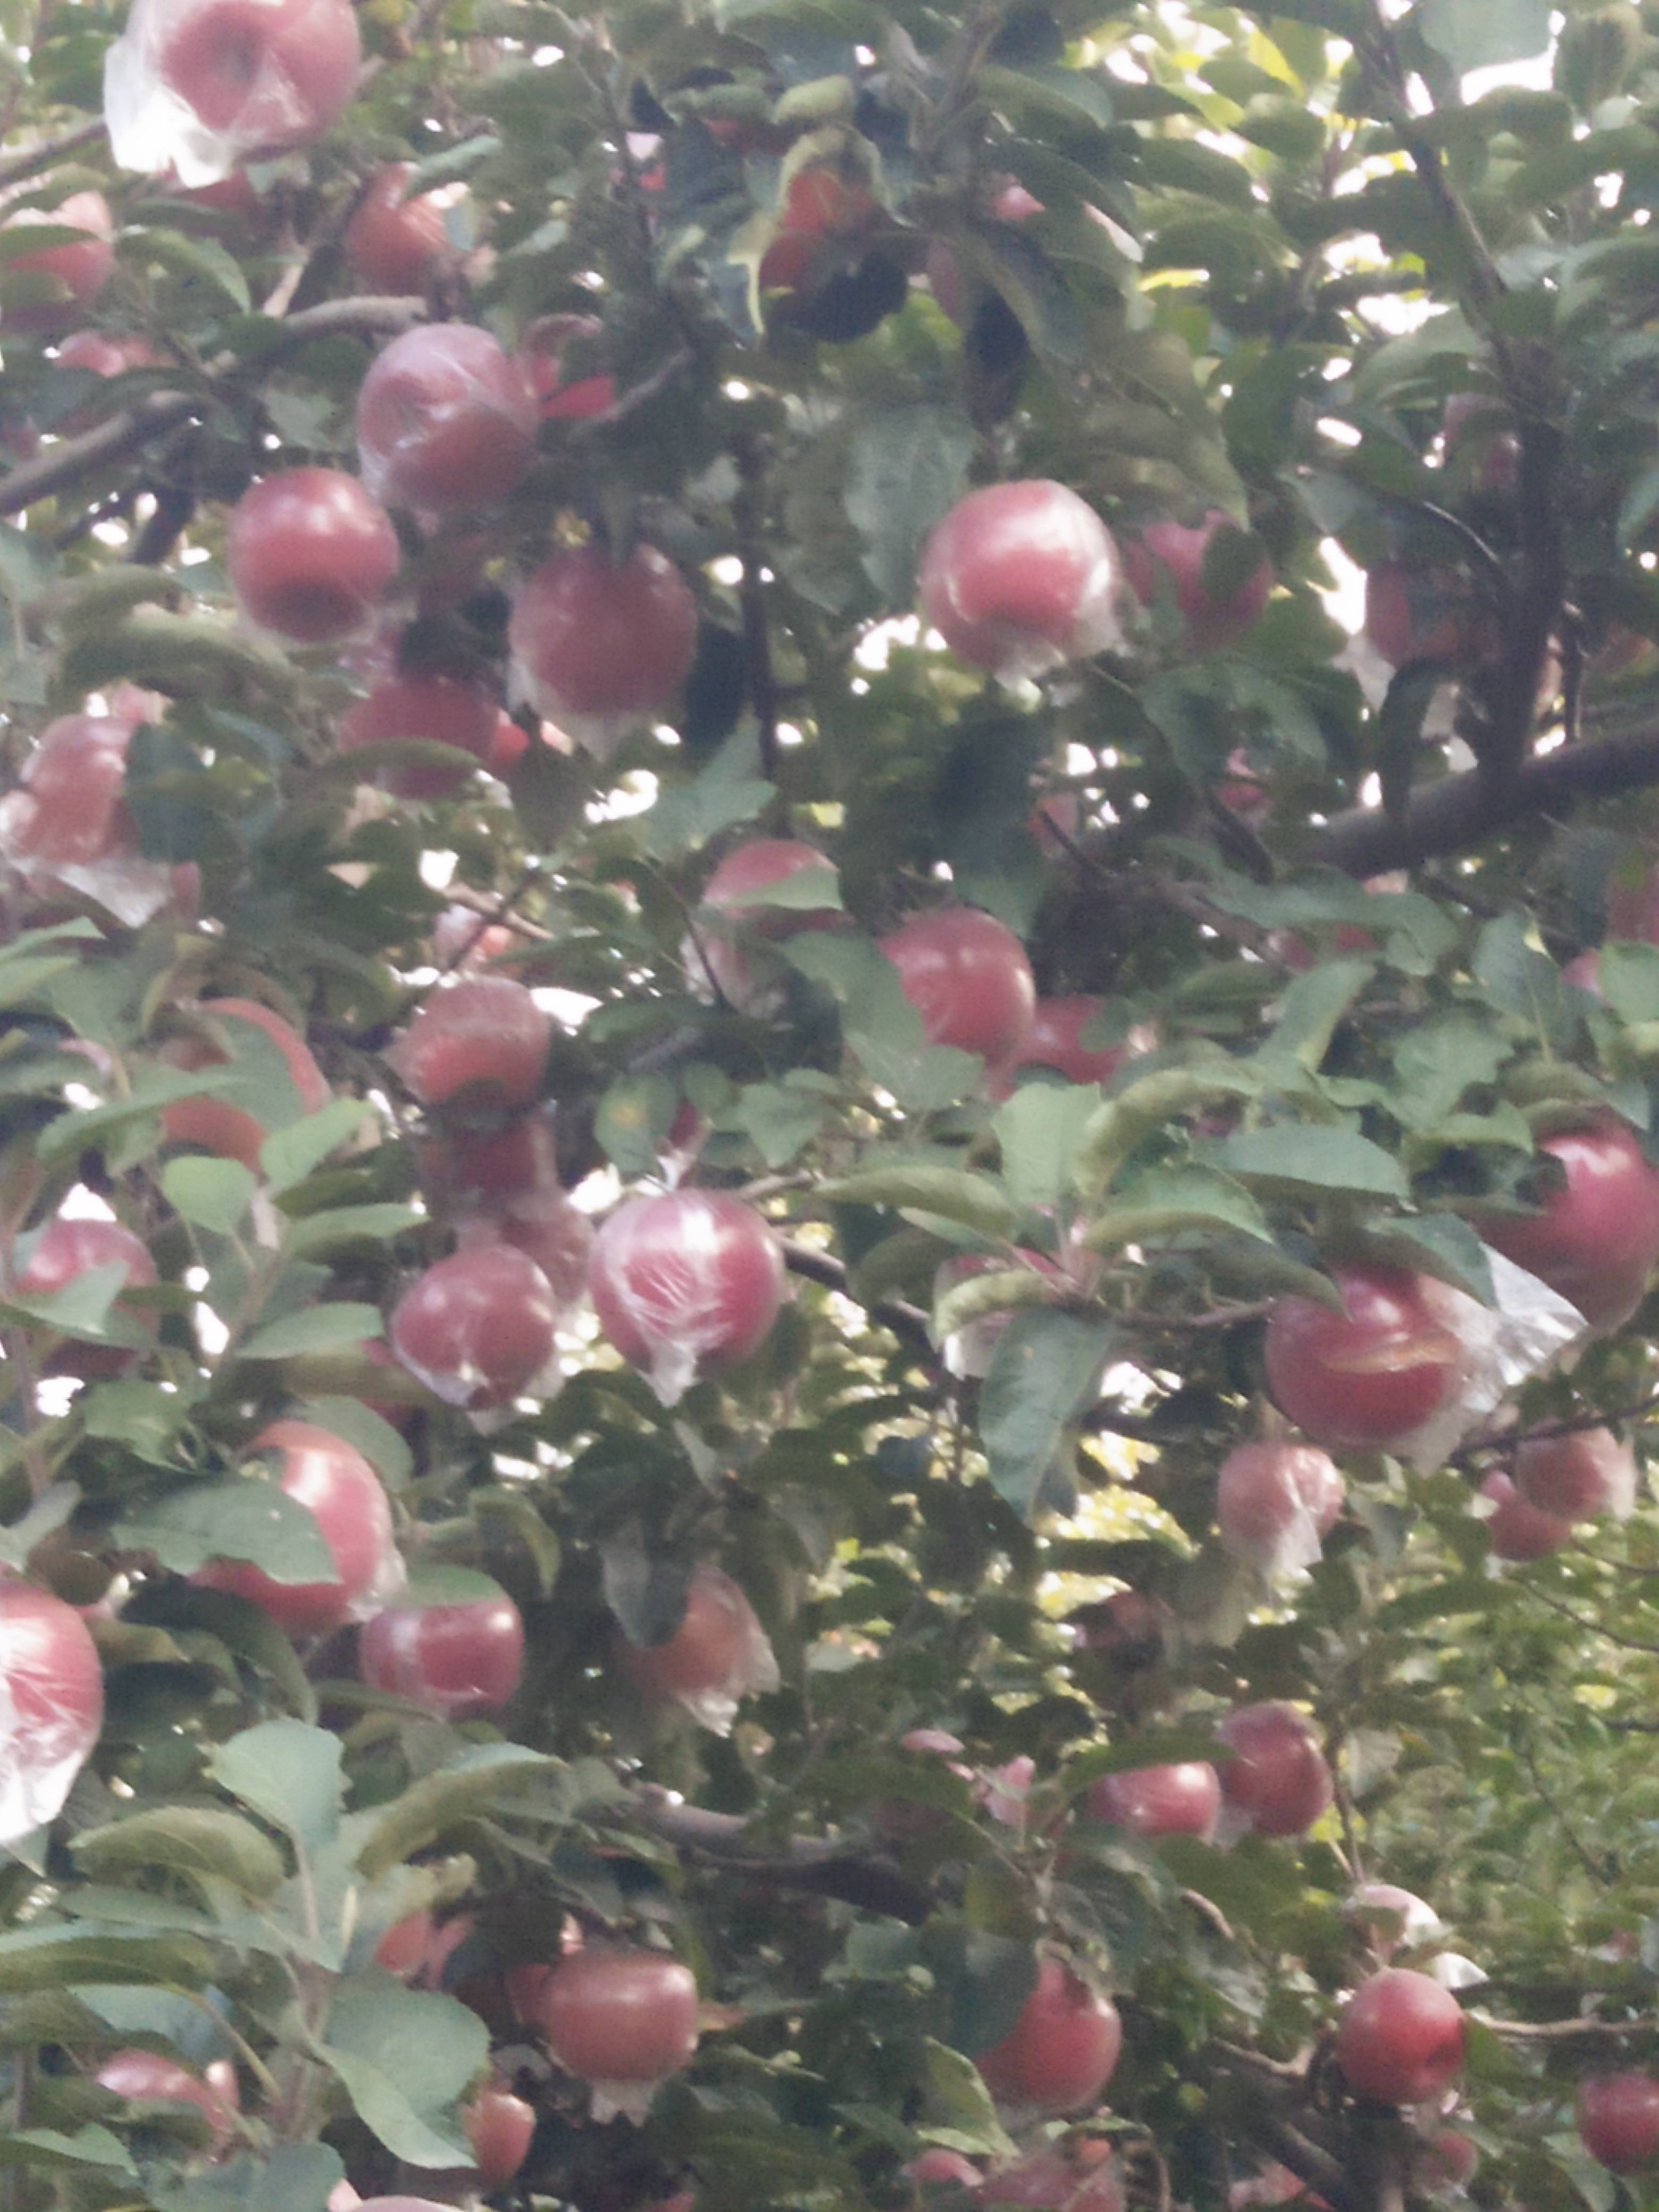 我这的国红苹果是全国最大的国红苹果生产基地。我村有4-5千亩。以全红，高庄，含糖量高。脆甜，没酸味，深受消费者喜爱而闻名。销往全国各地。现在以大量上市欢迎各地客